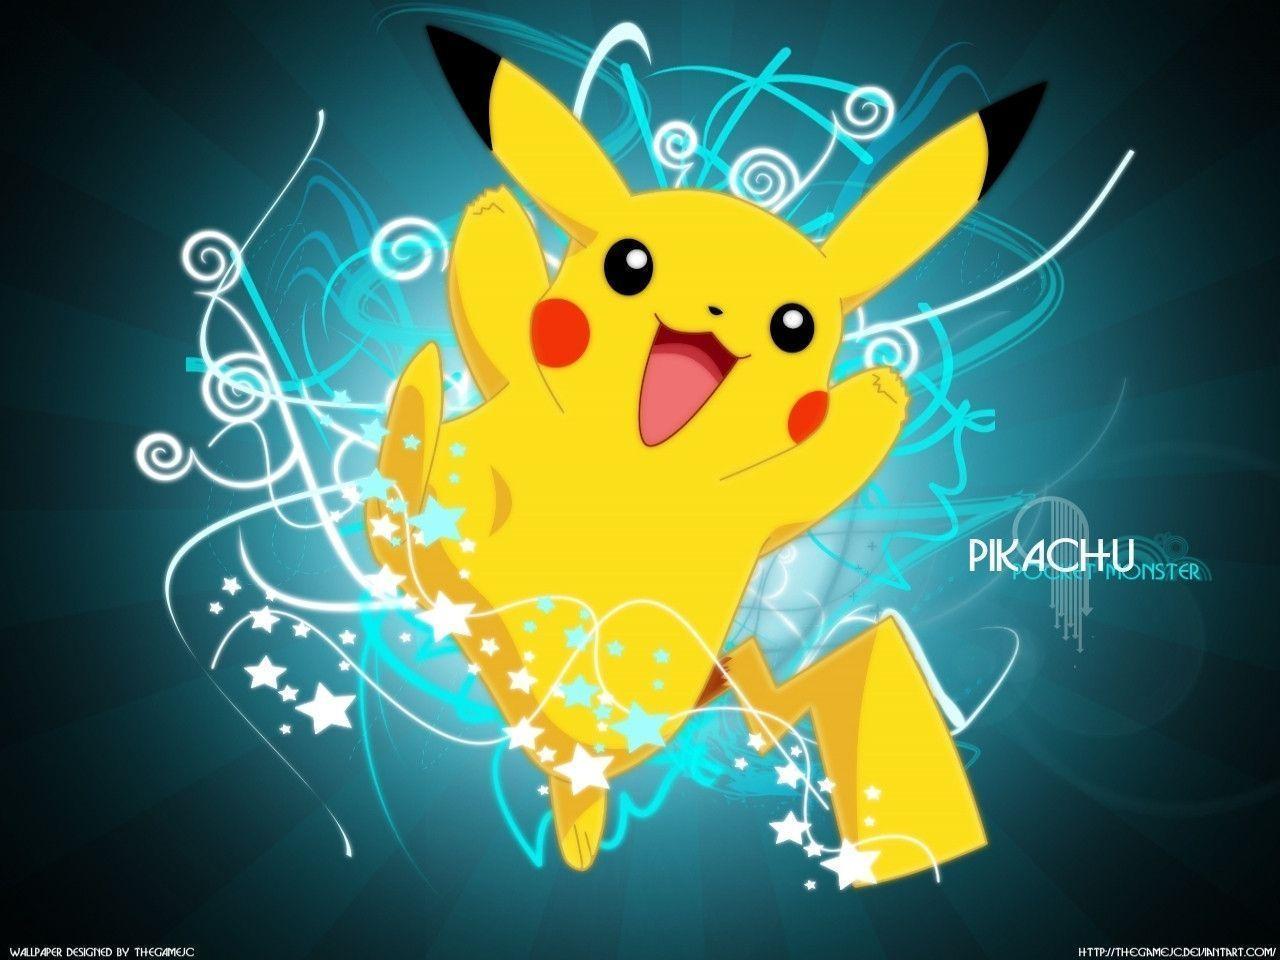 Electric Type Pokemon image pikachu wallpaper HD wallpaper